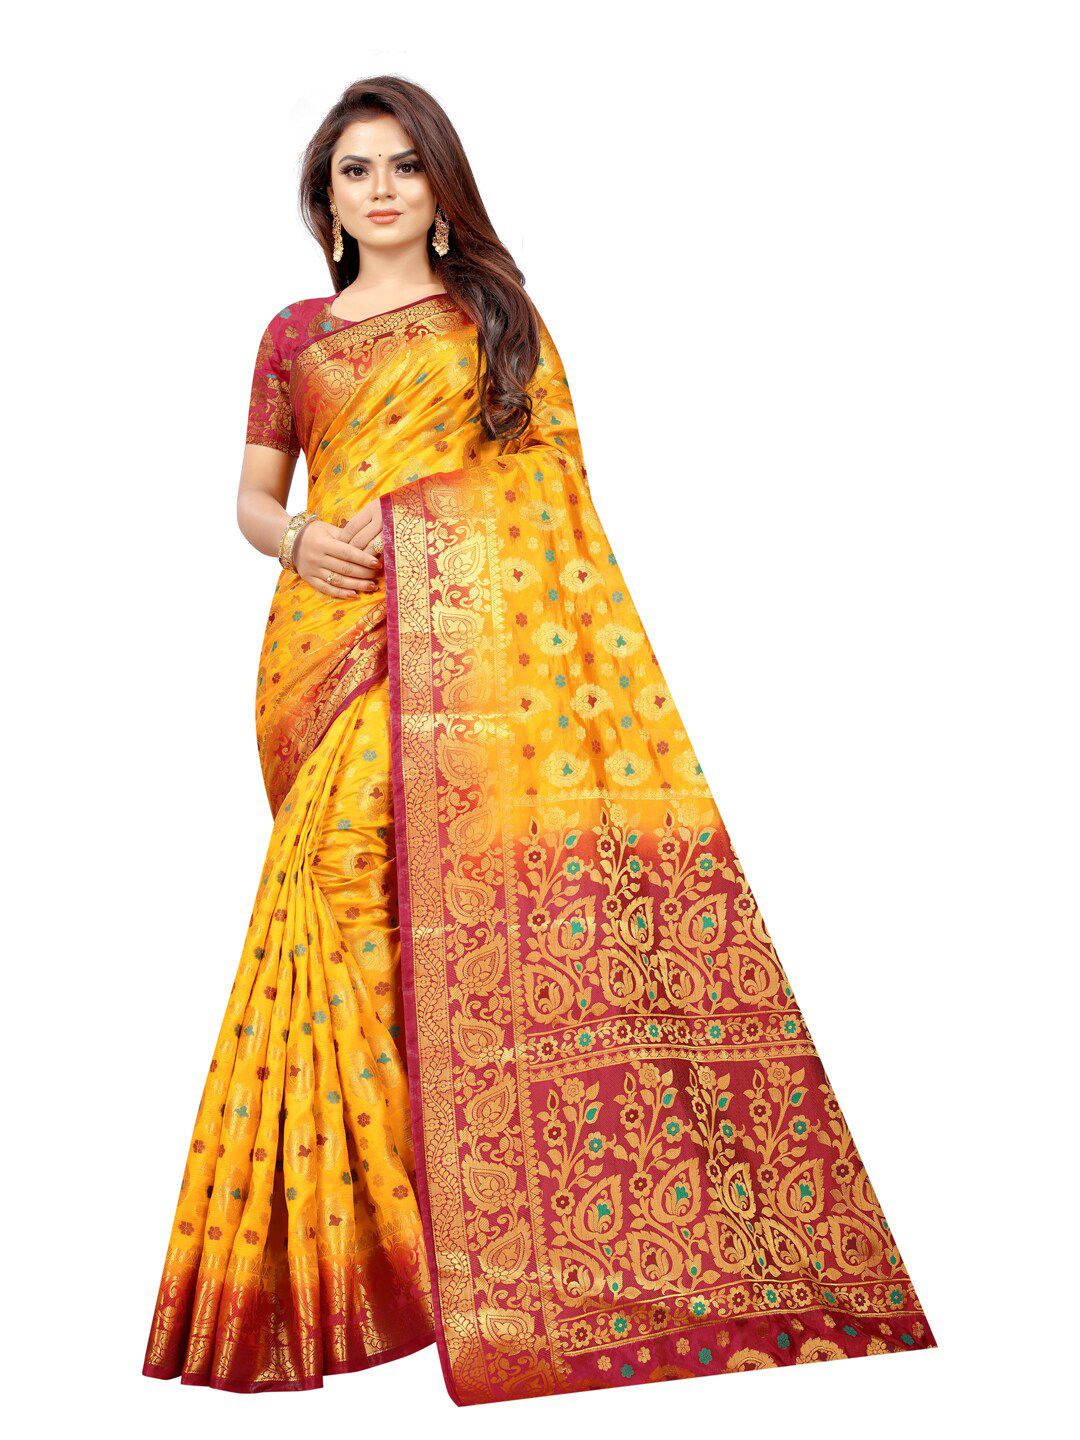 PERFECT WEAR Yellow & Red Ethnic Motifs Zari Silk Cotton Banarasi Saree Price in India